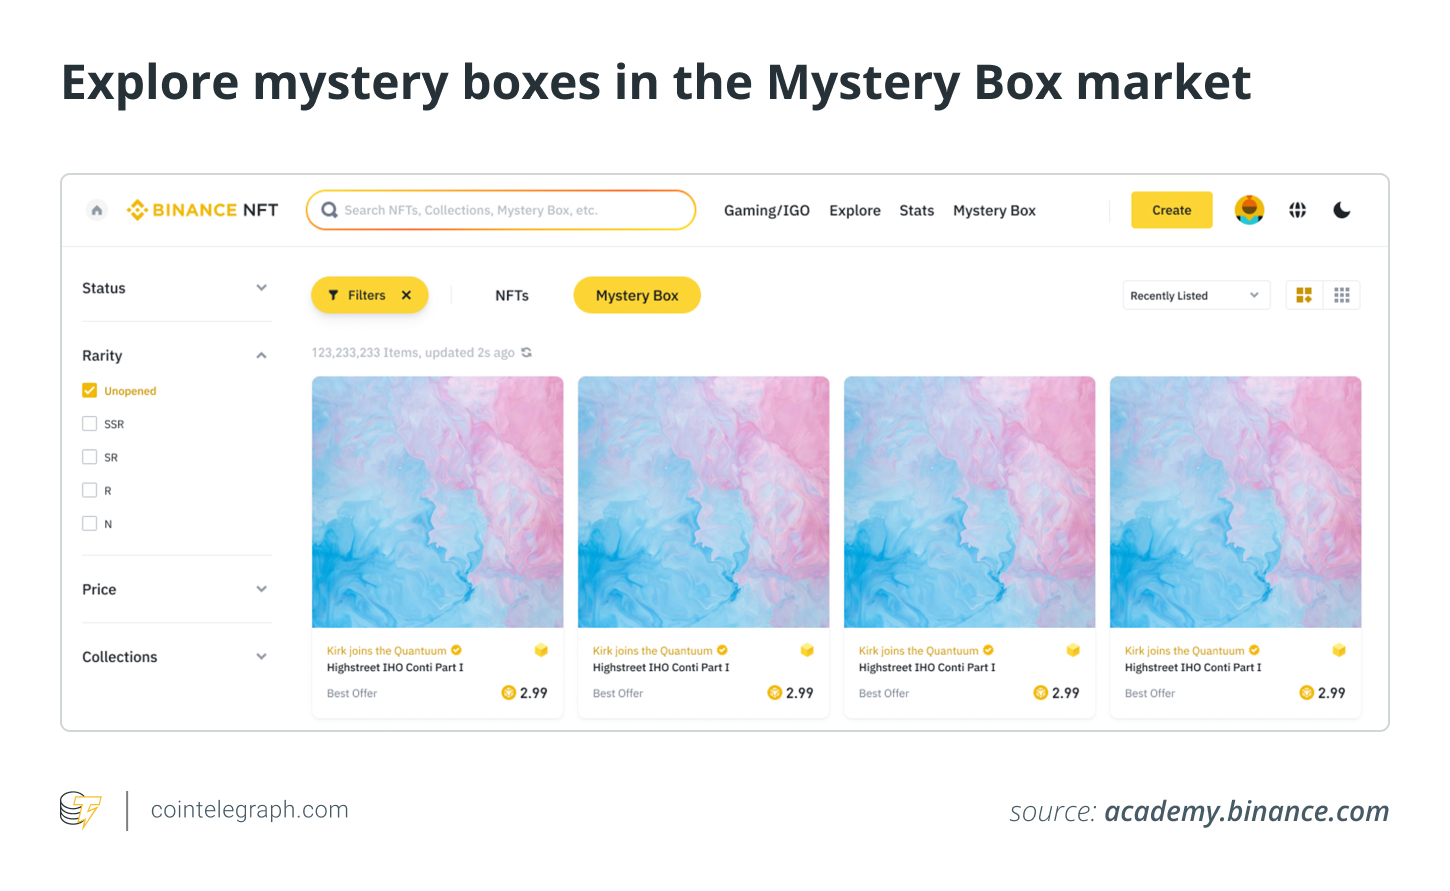 Explore caixas misteriosas no mercado de Caixas Misteriosas